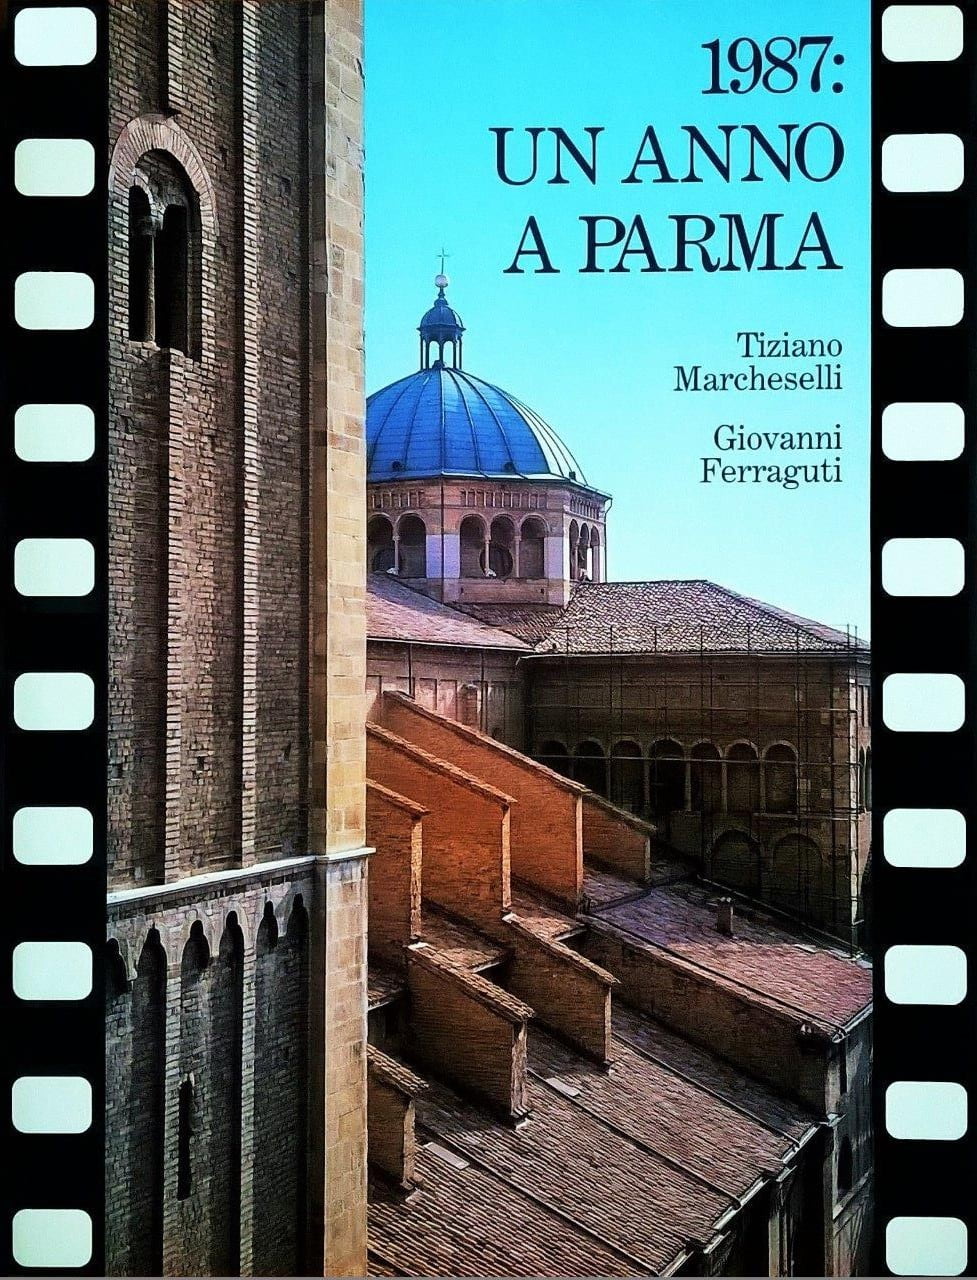 Tiziano Marcheselli - Giovanni Ferraguti, 1987: un anno a Parma, Parma, Segea Editrice (Artegrafica Silva), 1987, prefazione di Baldassarre Molossi